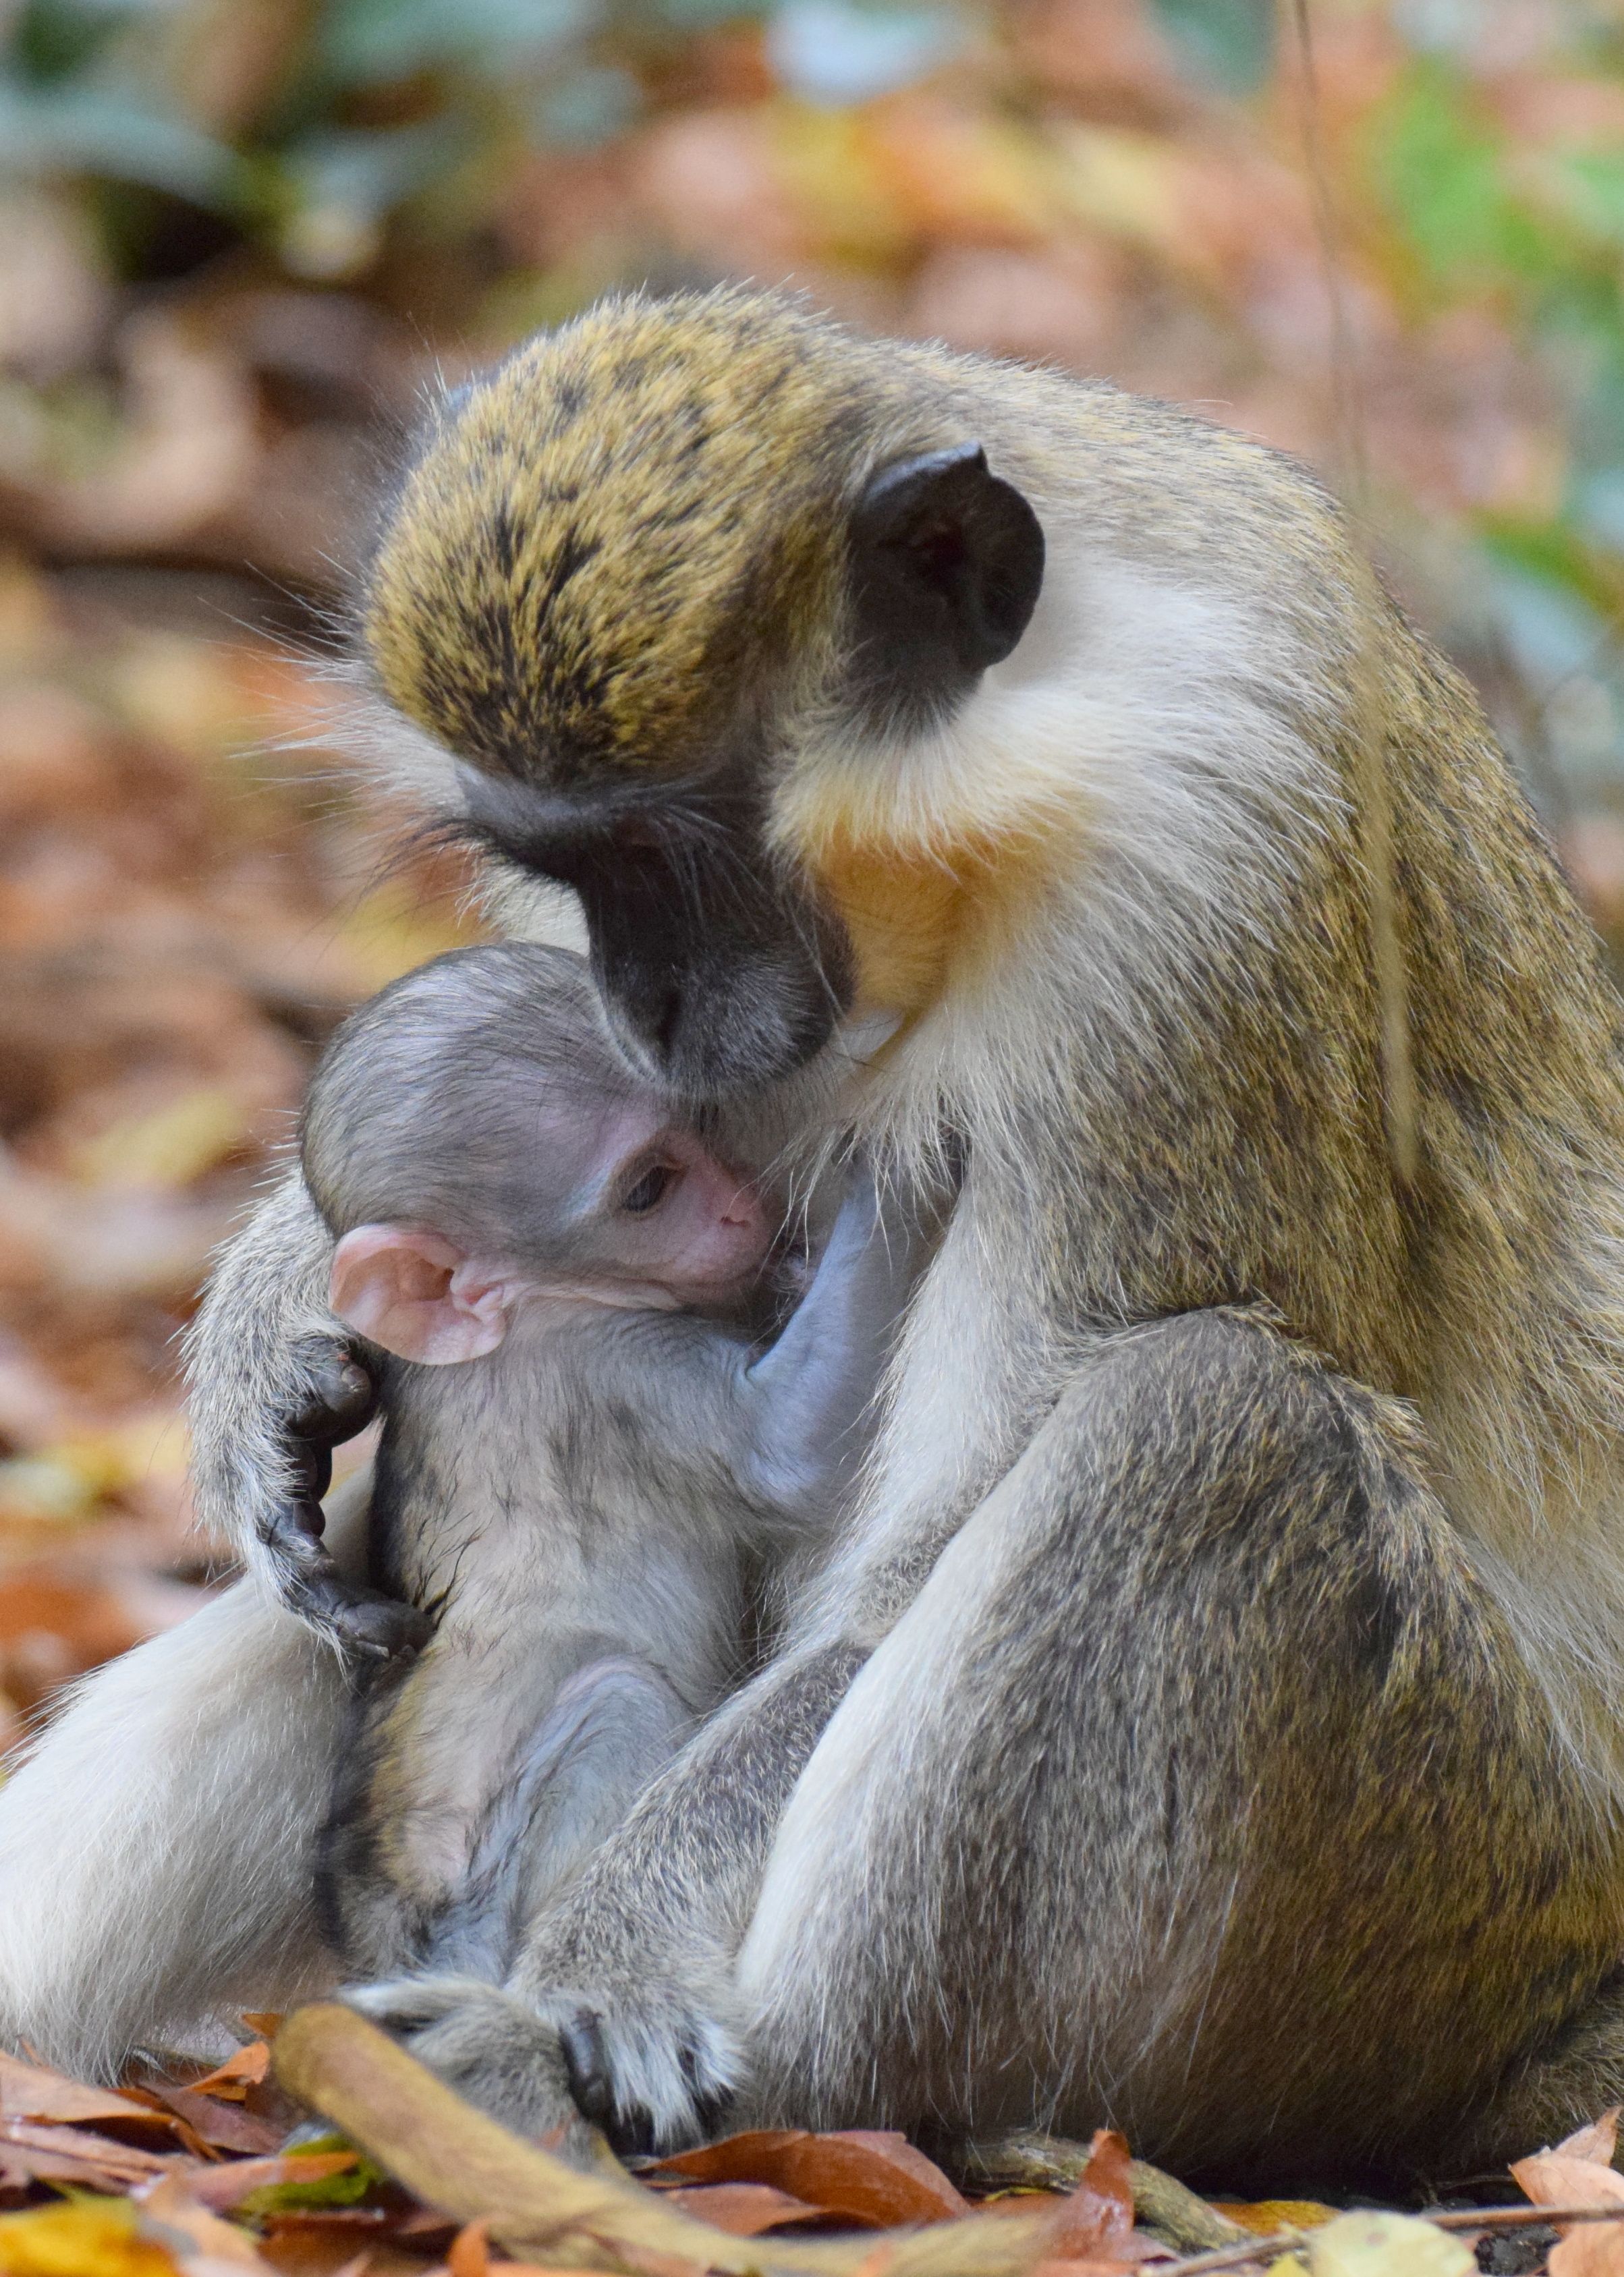 Barbados Green Monkey | Barbados Wildlife | Pinterest | Barbados